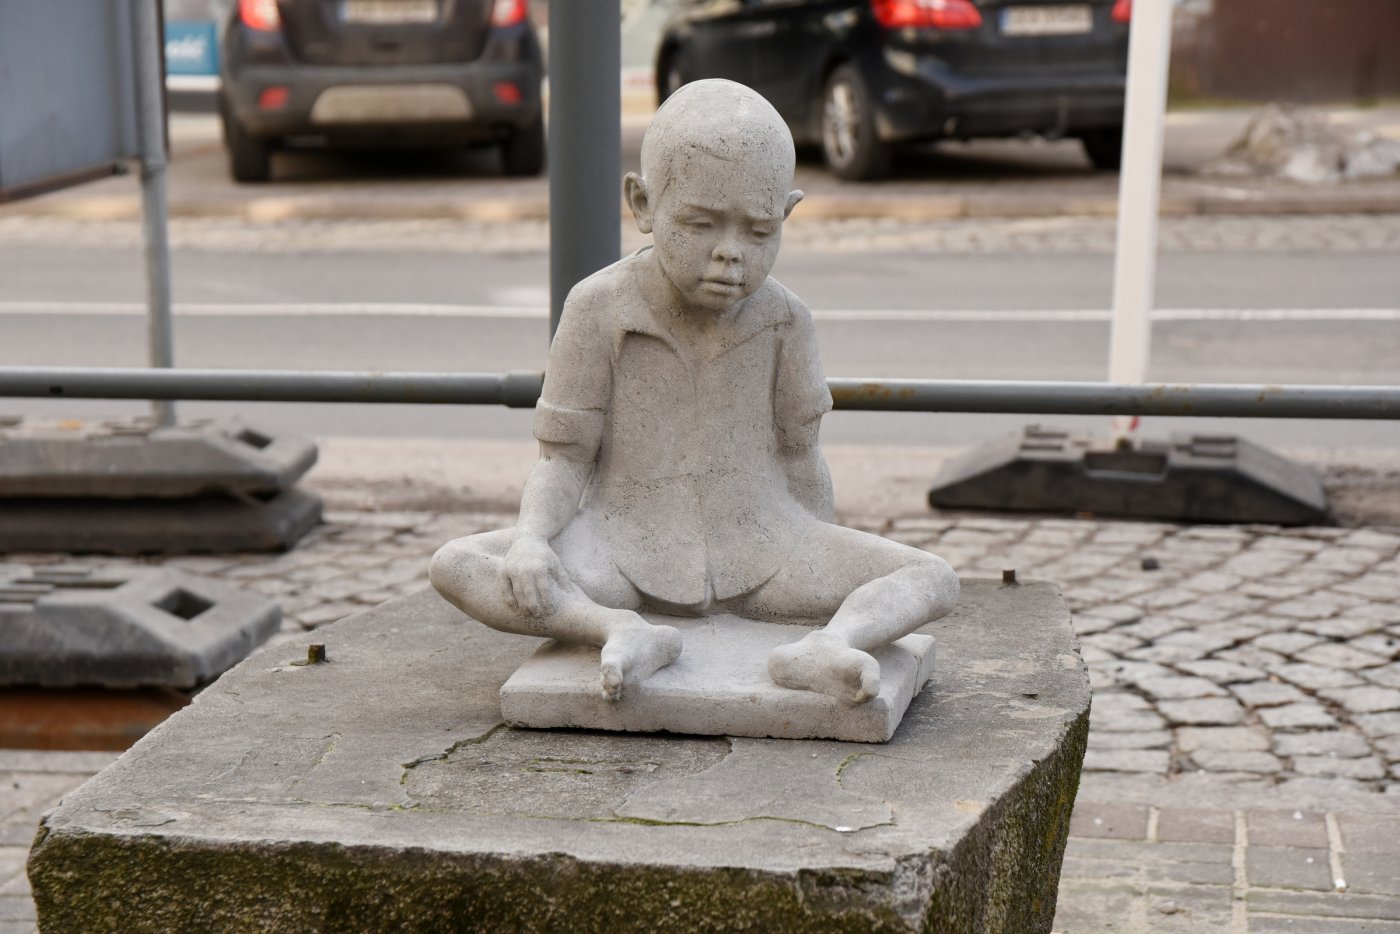 Nowa rzeźba Tewu pojawiła się przy ulicy 10 Lutego 26. Fot. Michał Kowalski